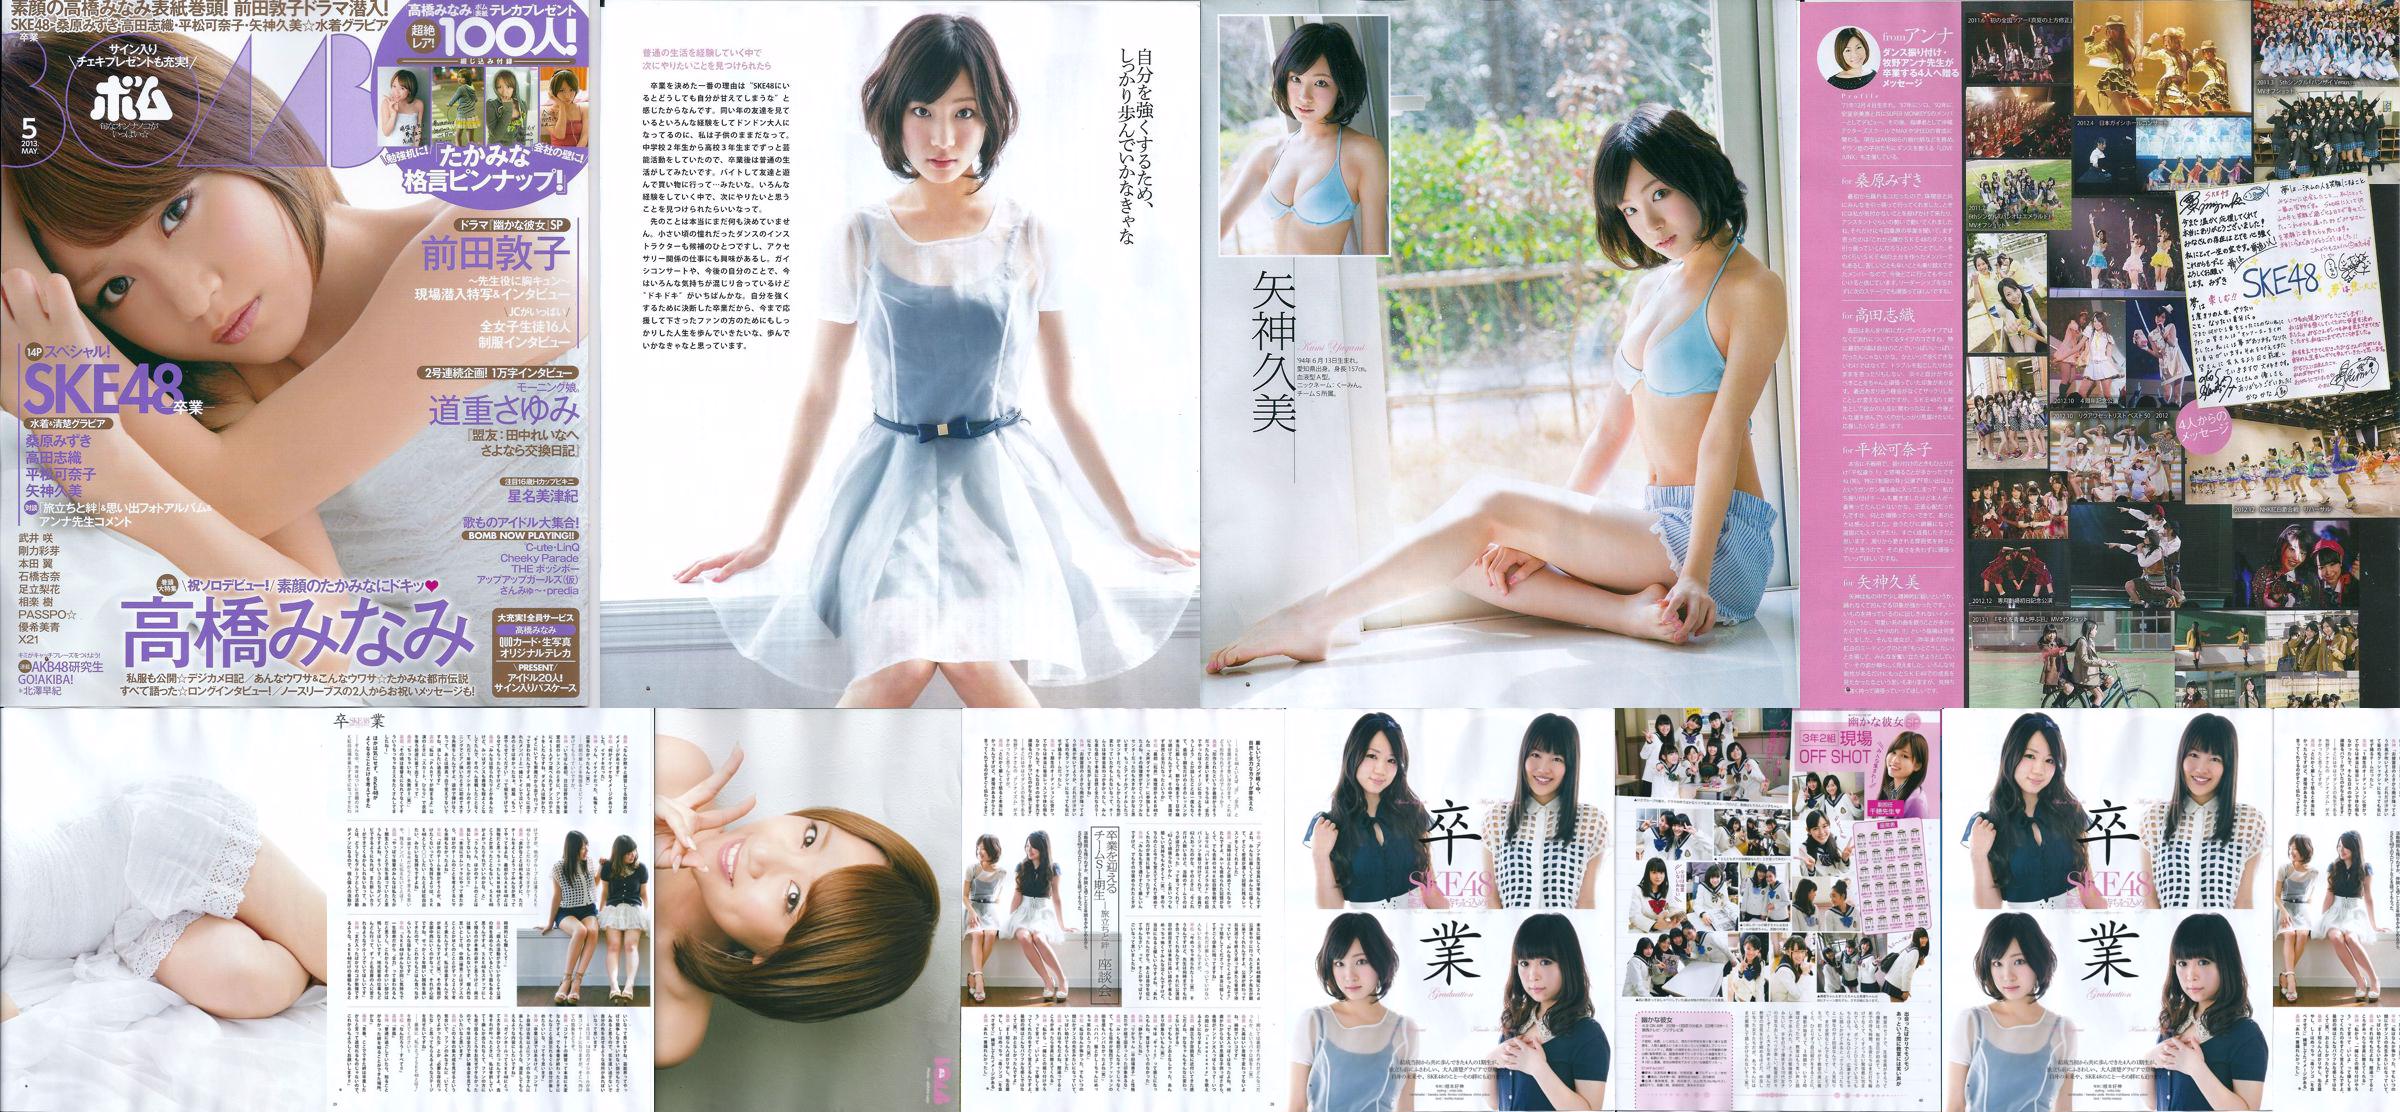 [Bomb Magazine] 2013 No.05 Kumi Yagami Minami Takahashi Atsuko Maeda Foto No.3a4681 Página 18